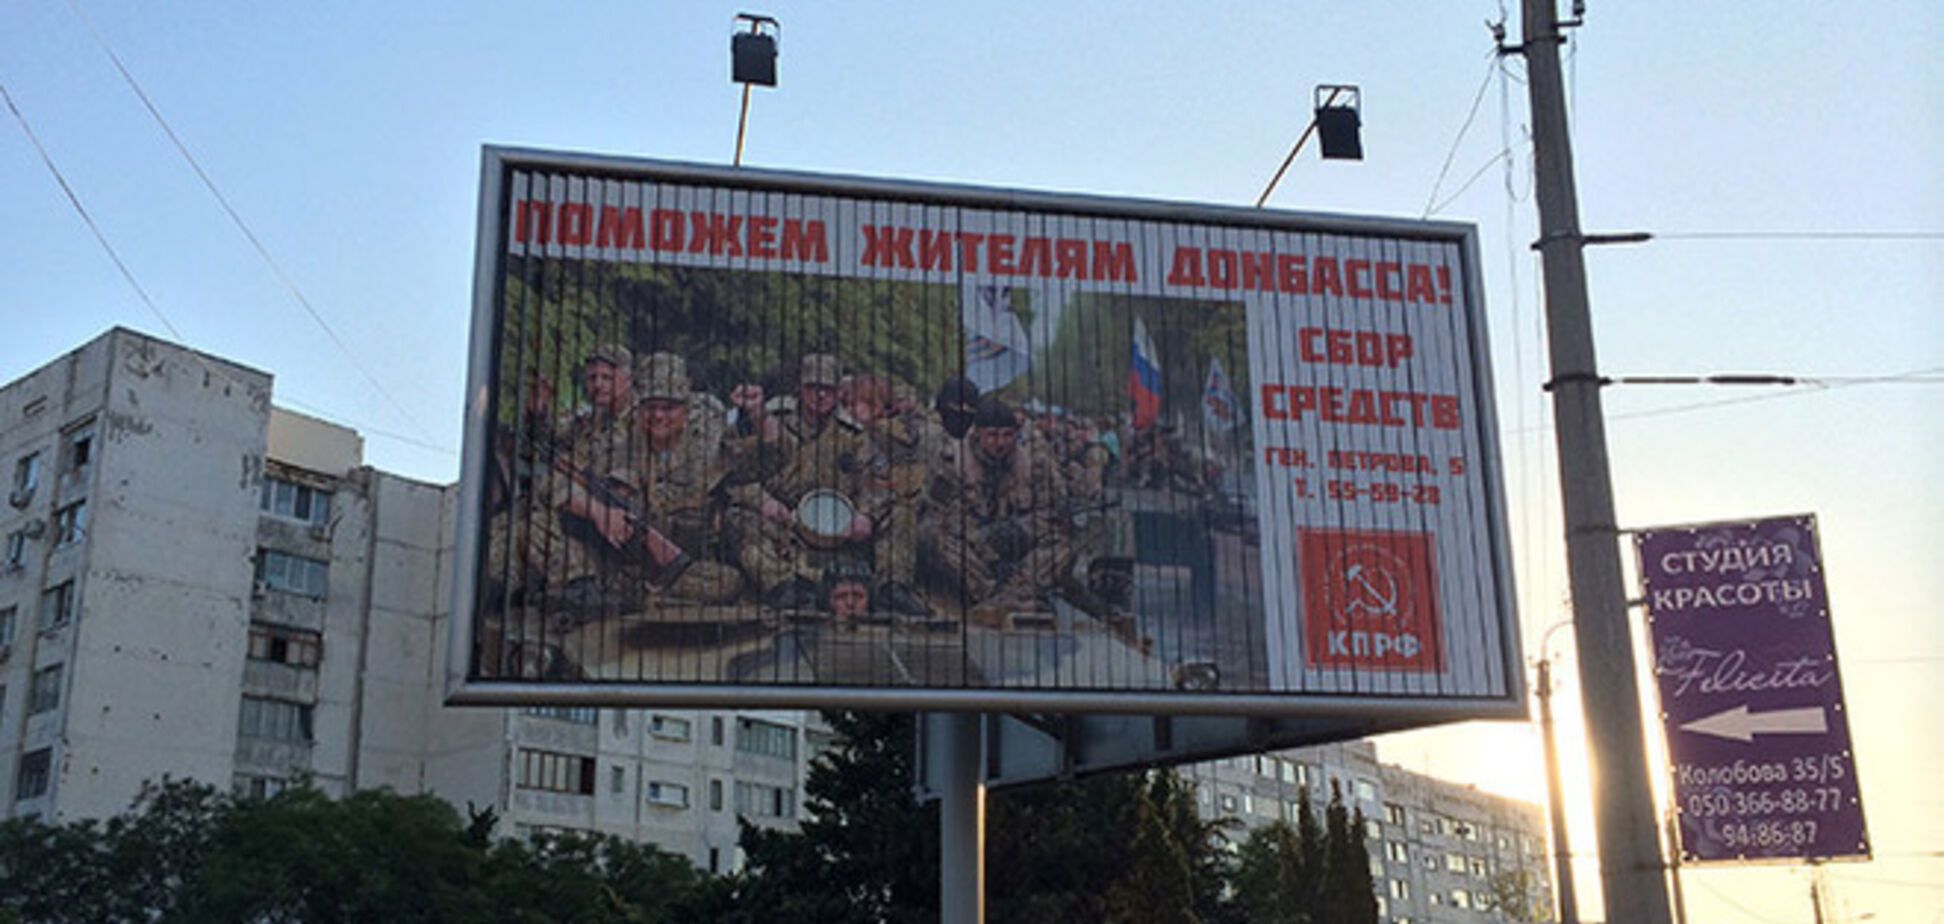 В Севастополе российские коммунисты организовали сбор средств для террористов